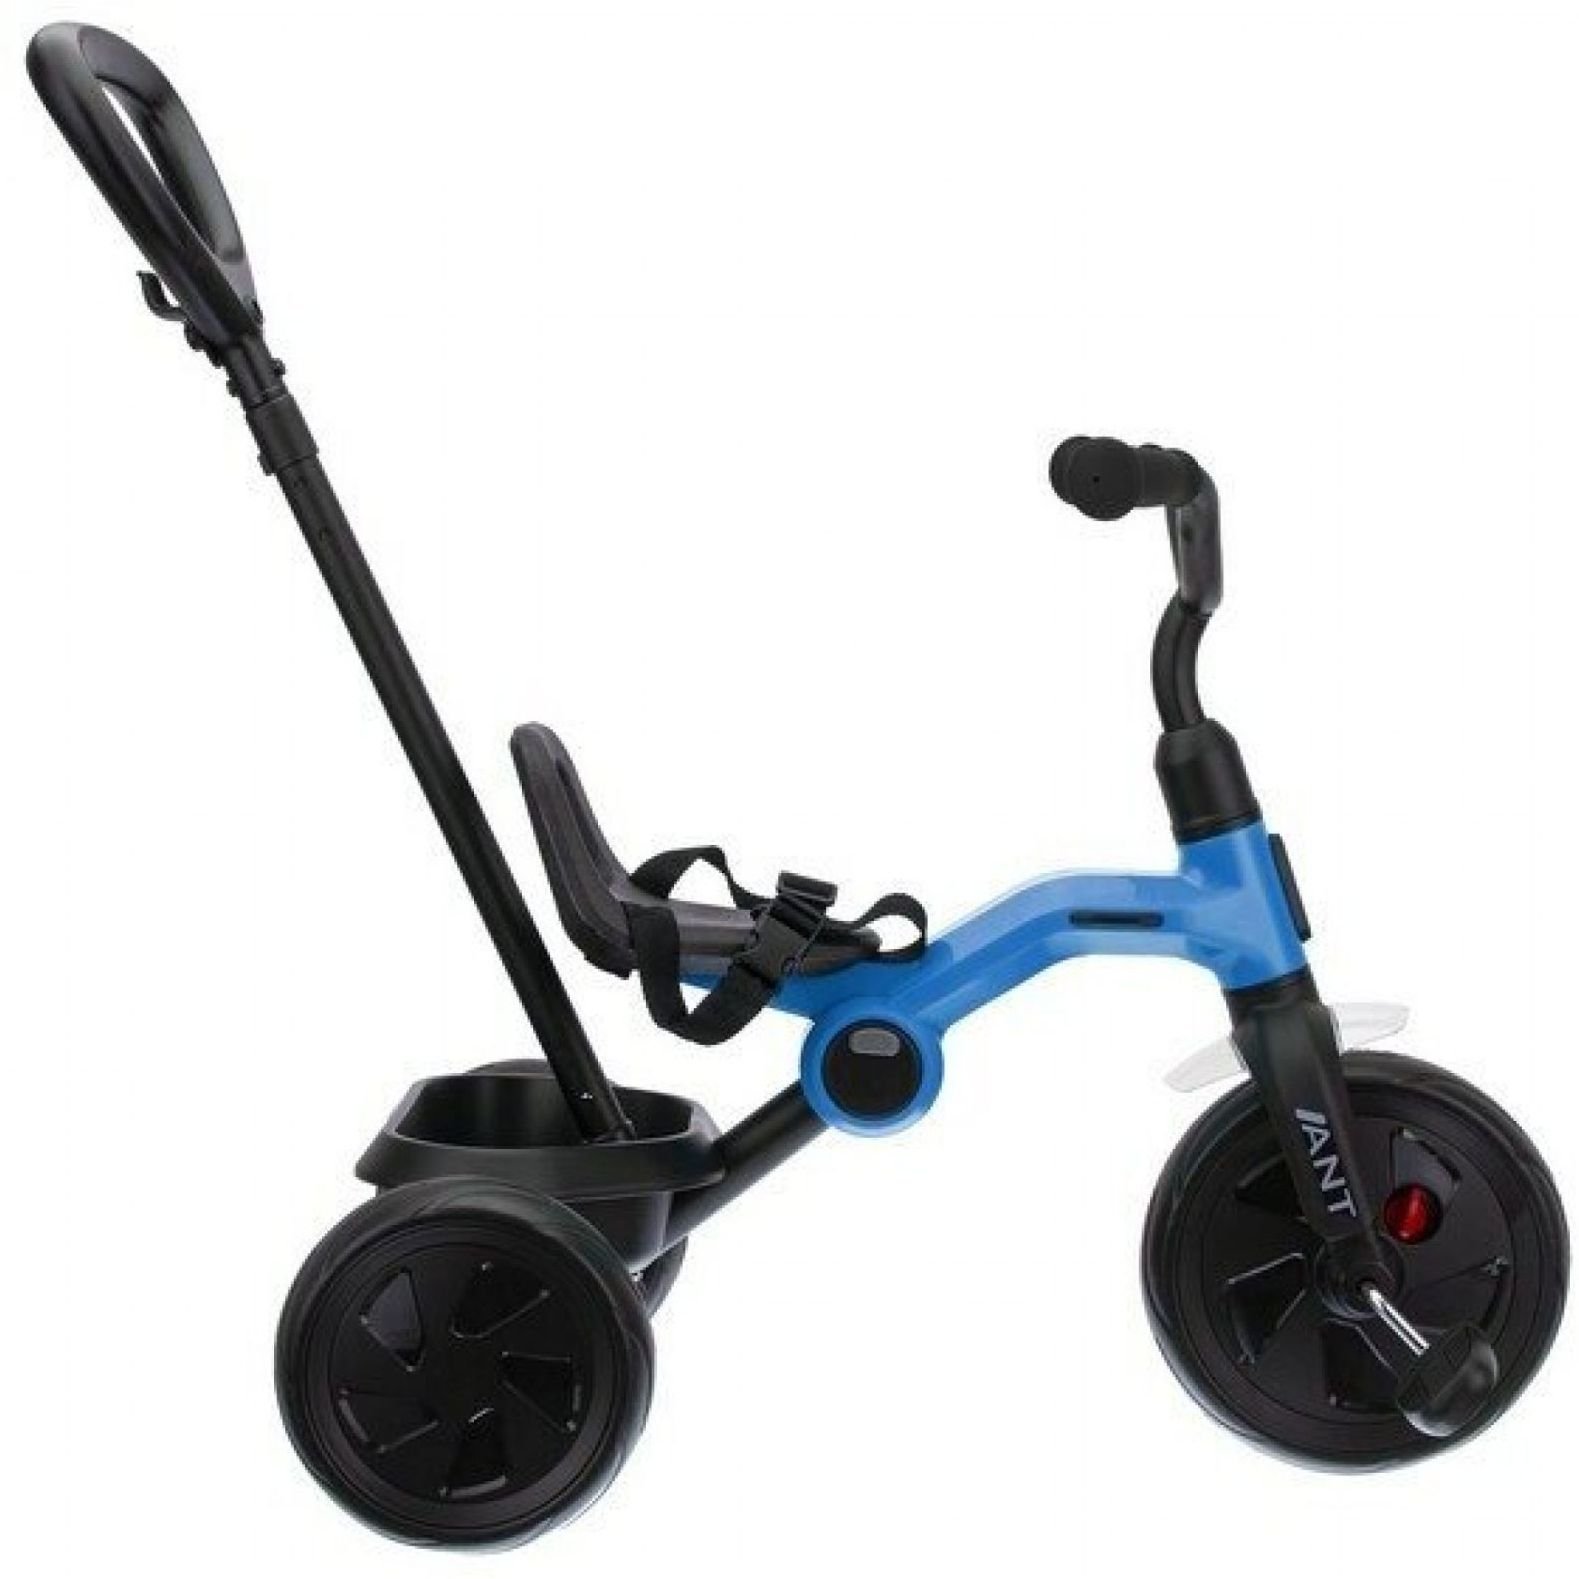 Детский трехколесный складной велосипед Qplay Ant+ Blue, синий (T190-2Ant+Blue) - фото 3